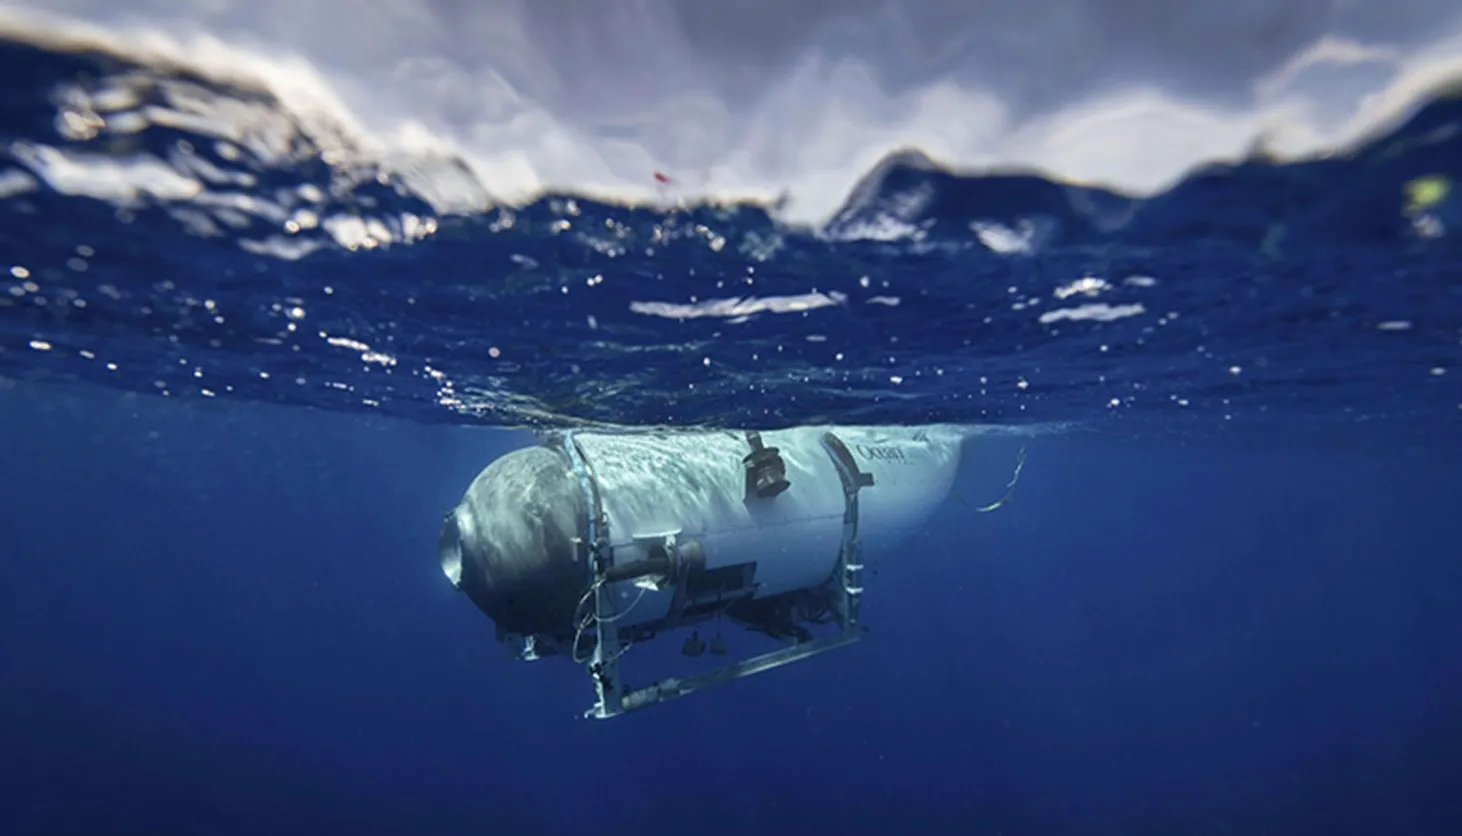 Πως πέρασαν τις τελευταίες ώρες τους οι επιβάτες του μοιραίου υποβρυχίου Titan